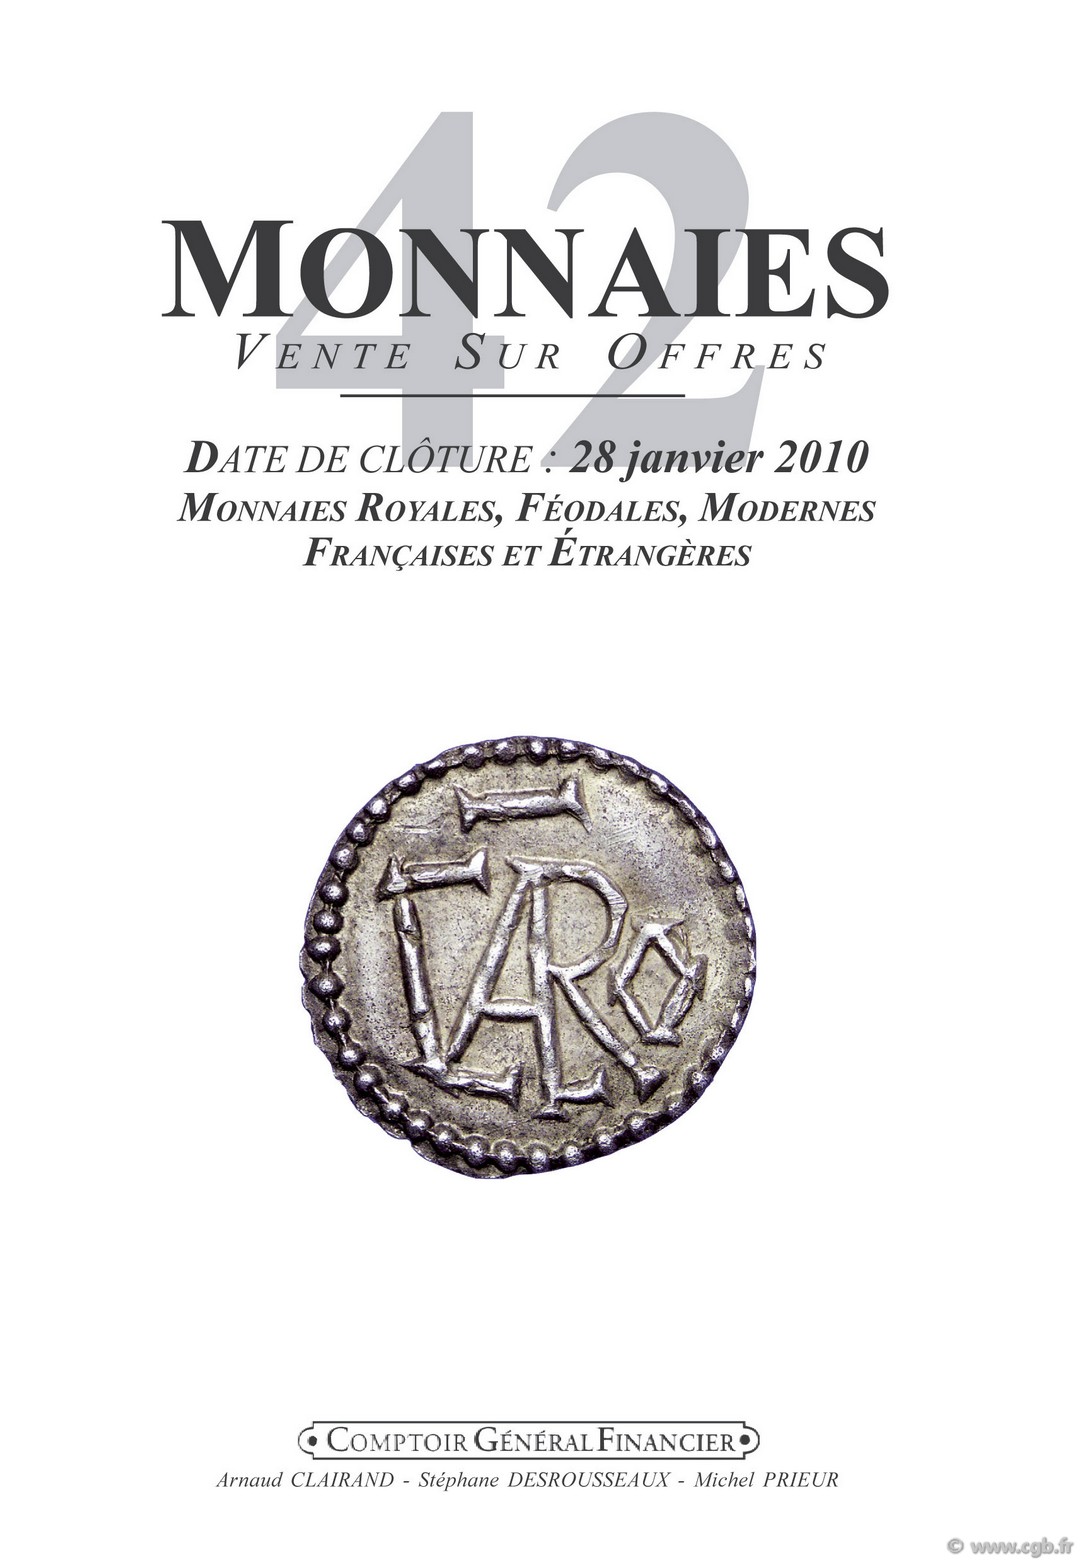 Monnaies 42 monnaies royales, féodales, modernes et étrangères CLAIRAND Arnaud, DESROUSSEAUX Stéphane, PRIEUR Michel 